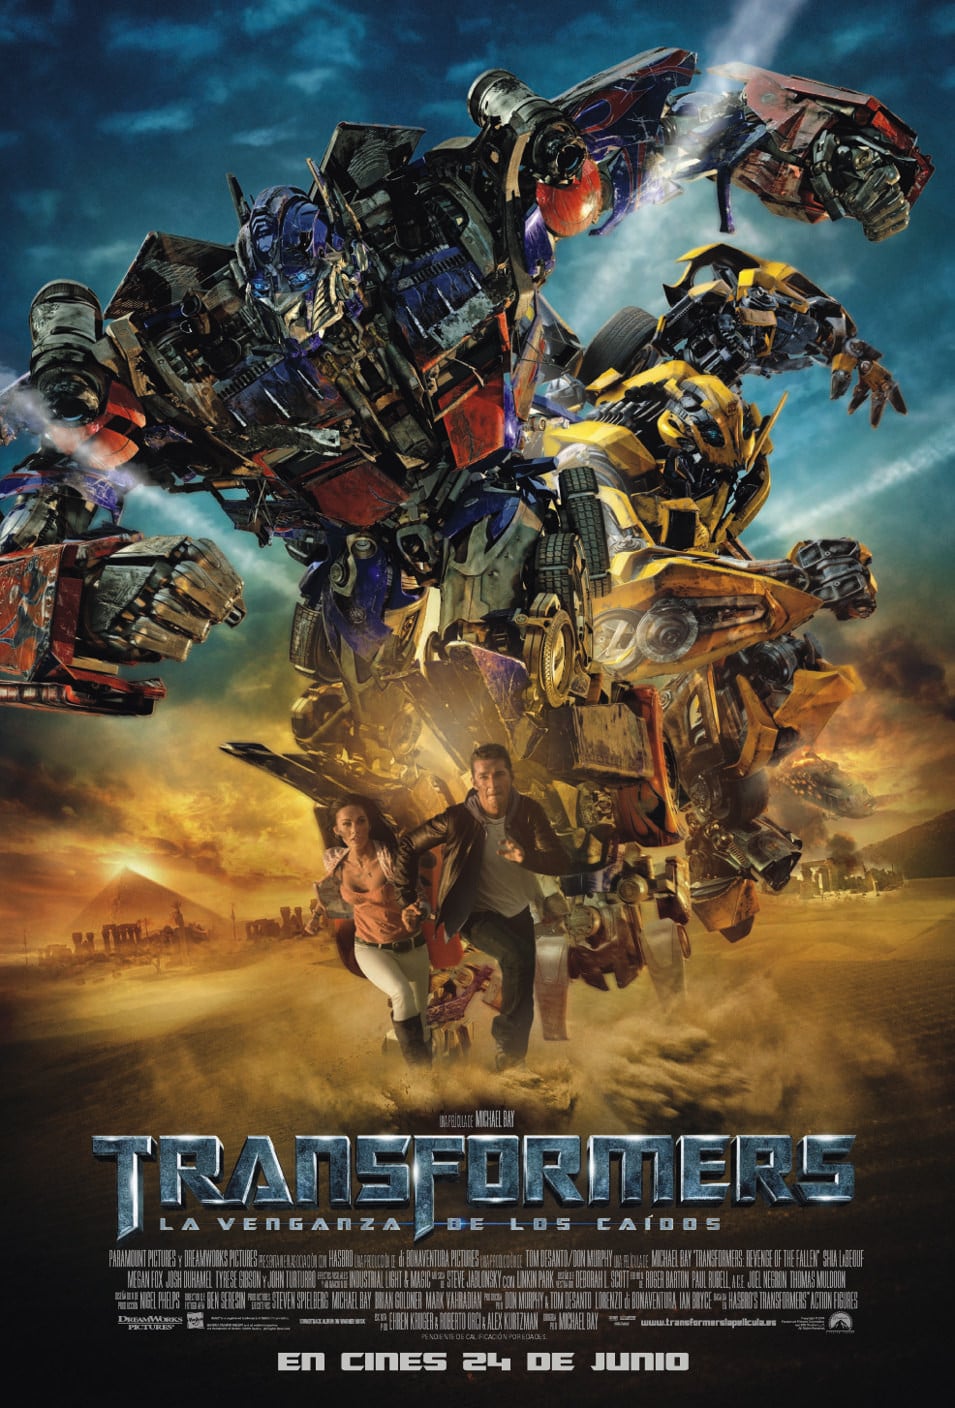 Transformers – La venganza de los caídos